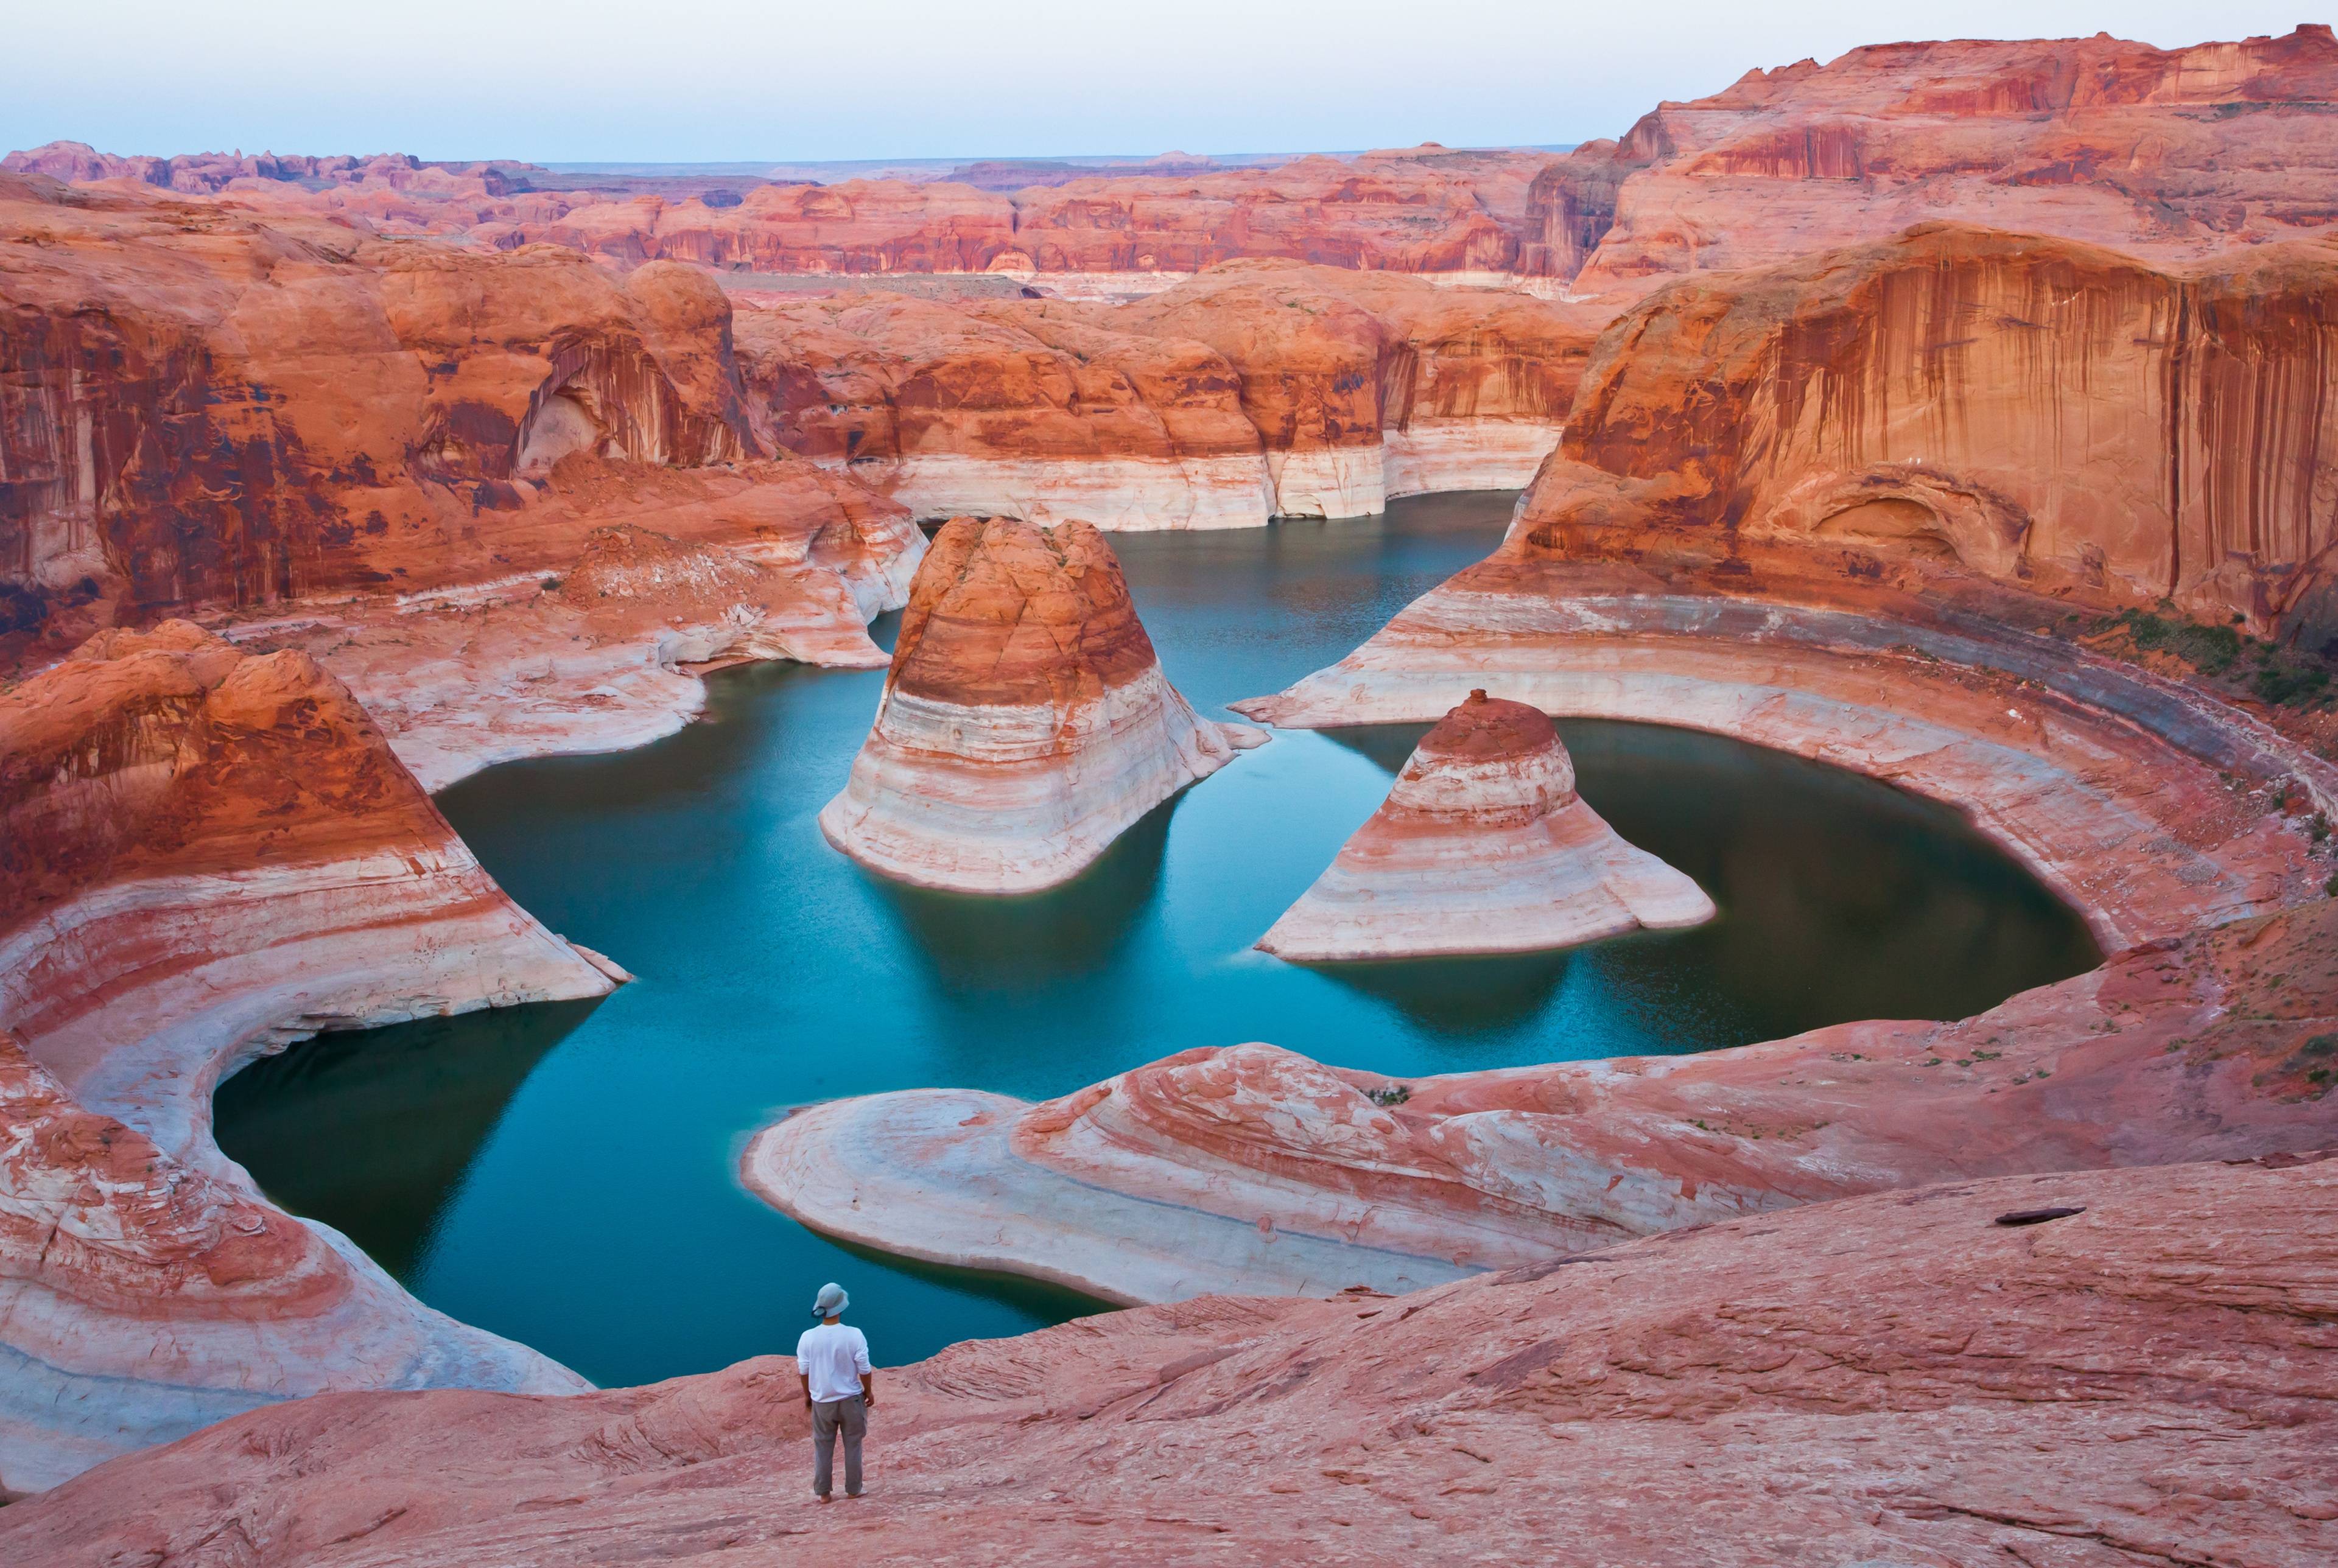 Viaggiate attraverso l'Arizona, lo Utah e il Nevada e ammirate le meraviglie naturali del Sud-Ovest